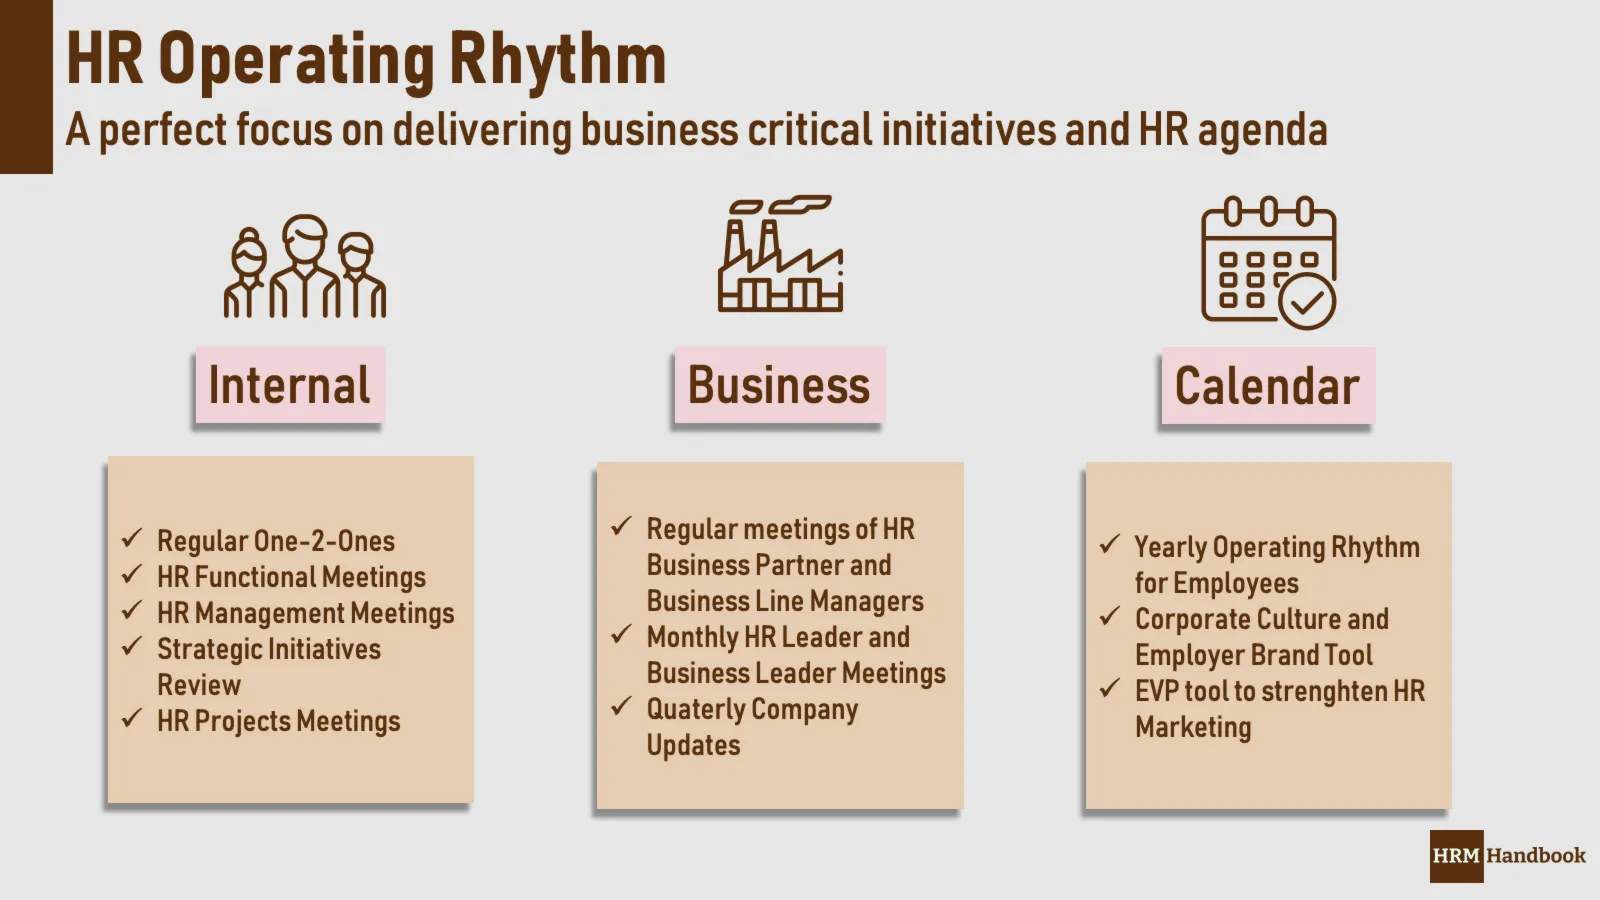 HR Operating Rhythm in a Detail